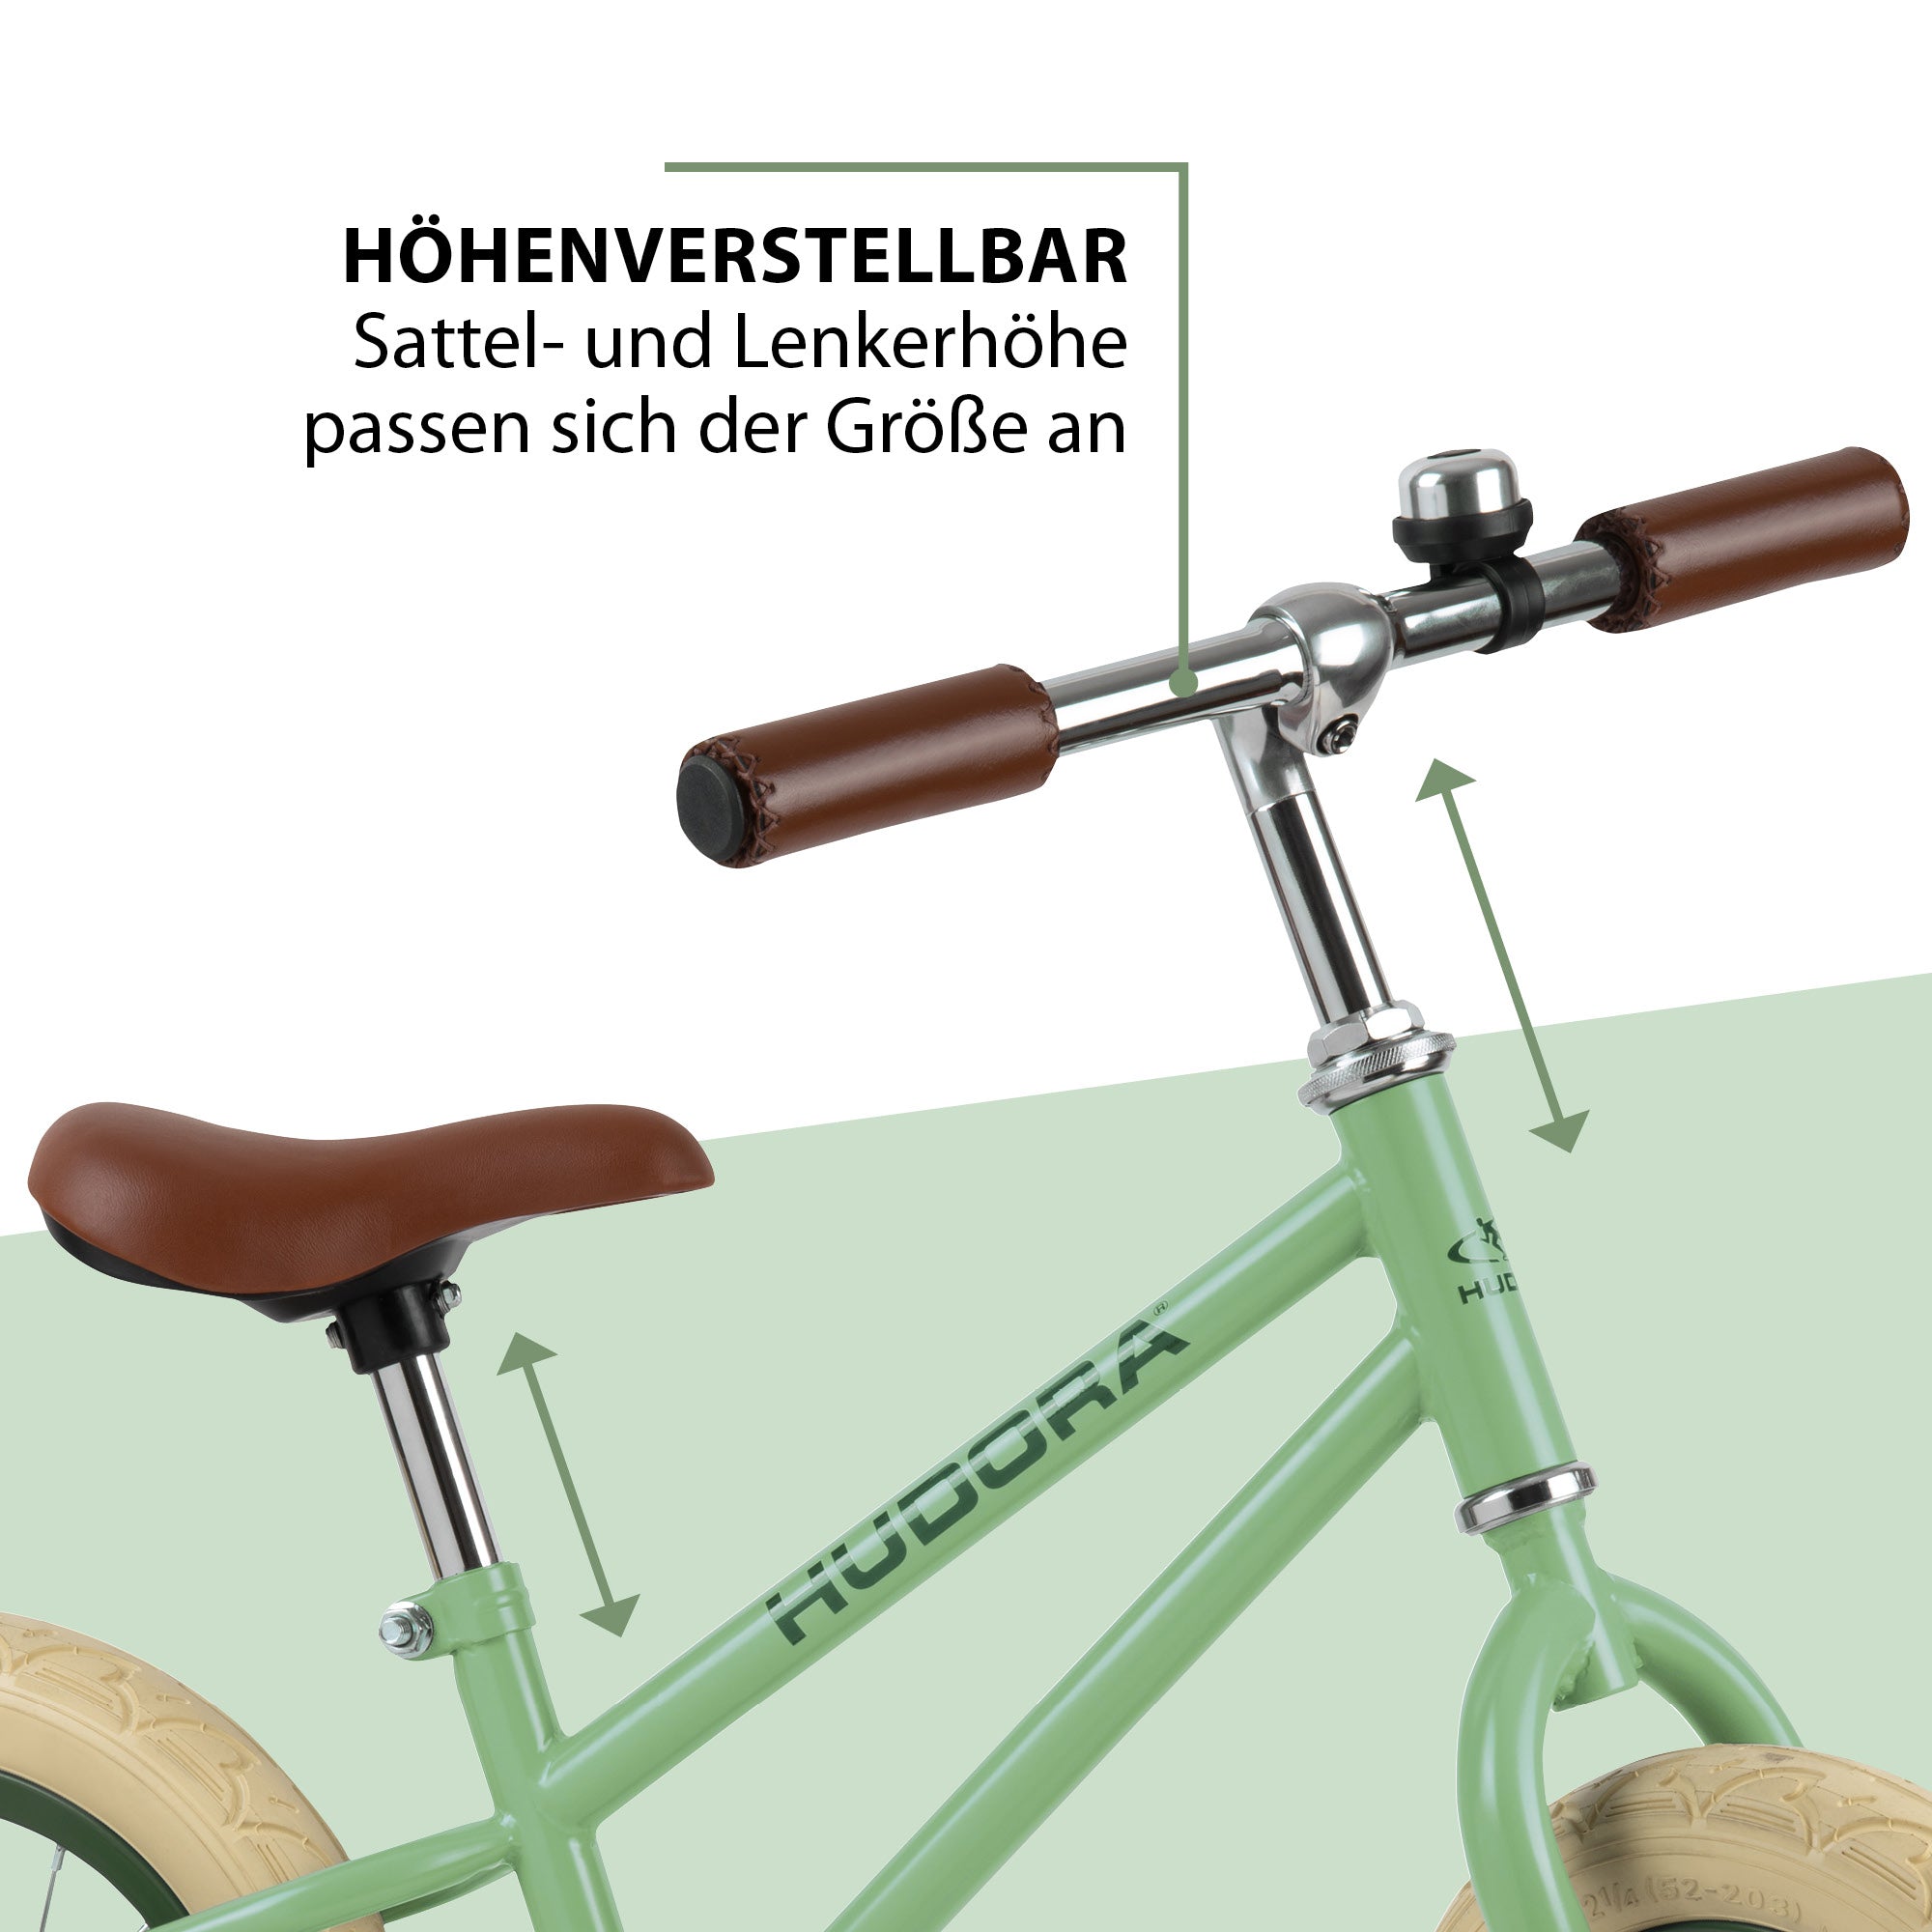 Bicicletă de echilibru retro verde cu cos, buzunar si claxon vintage